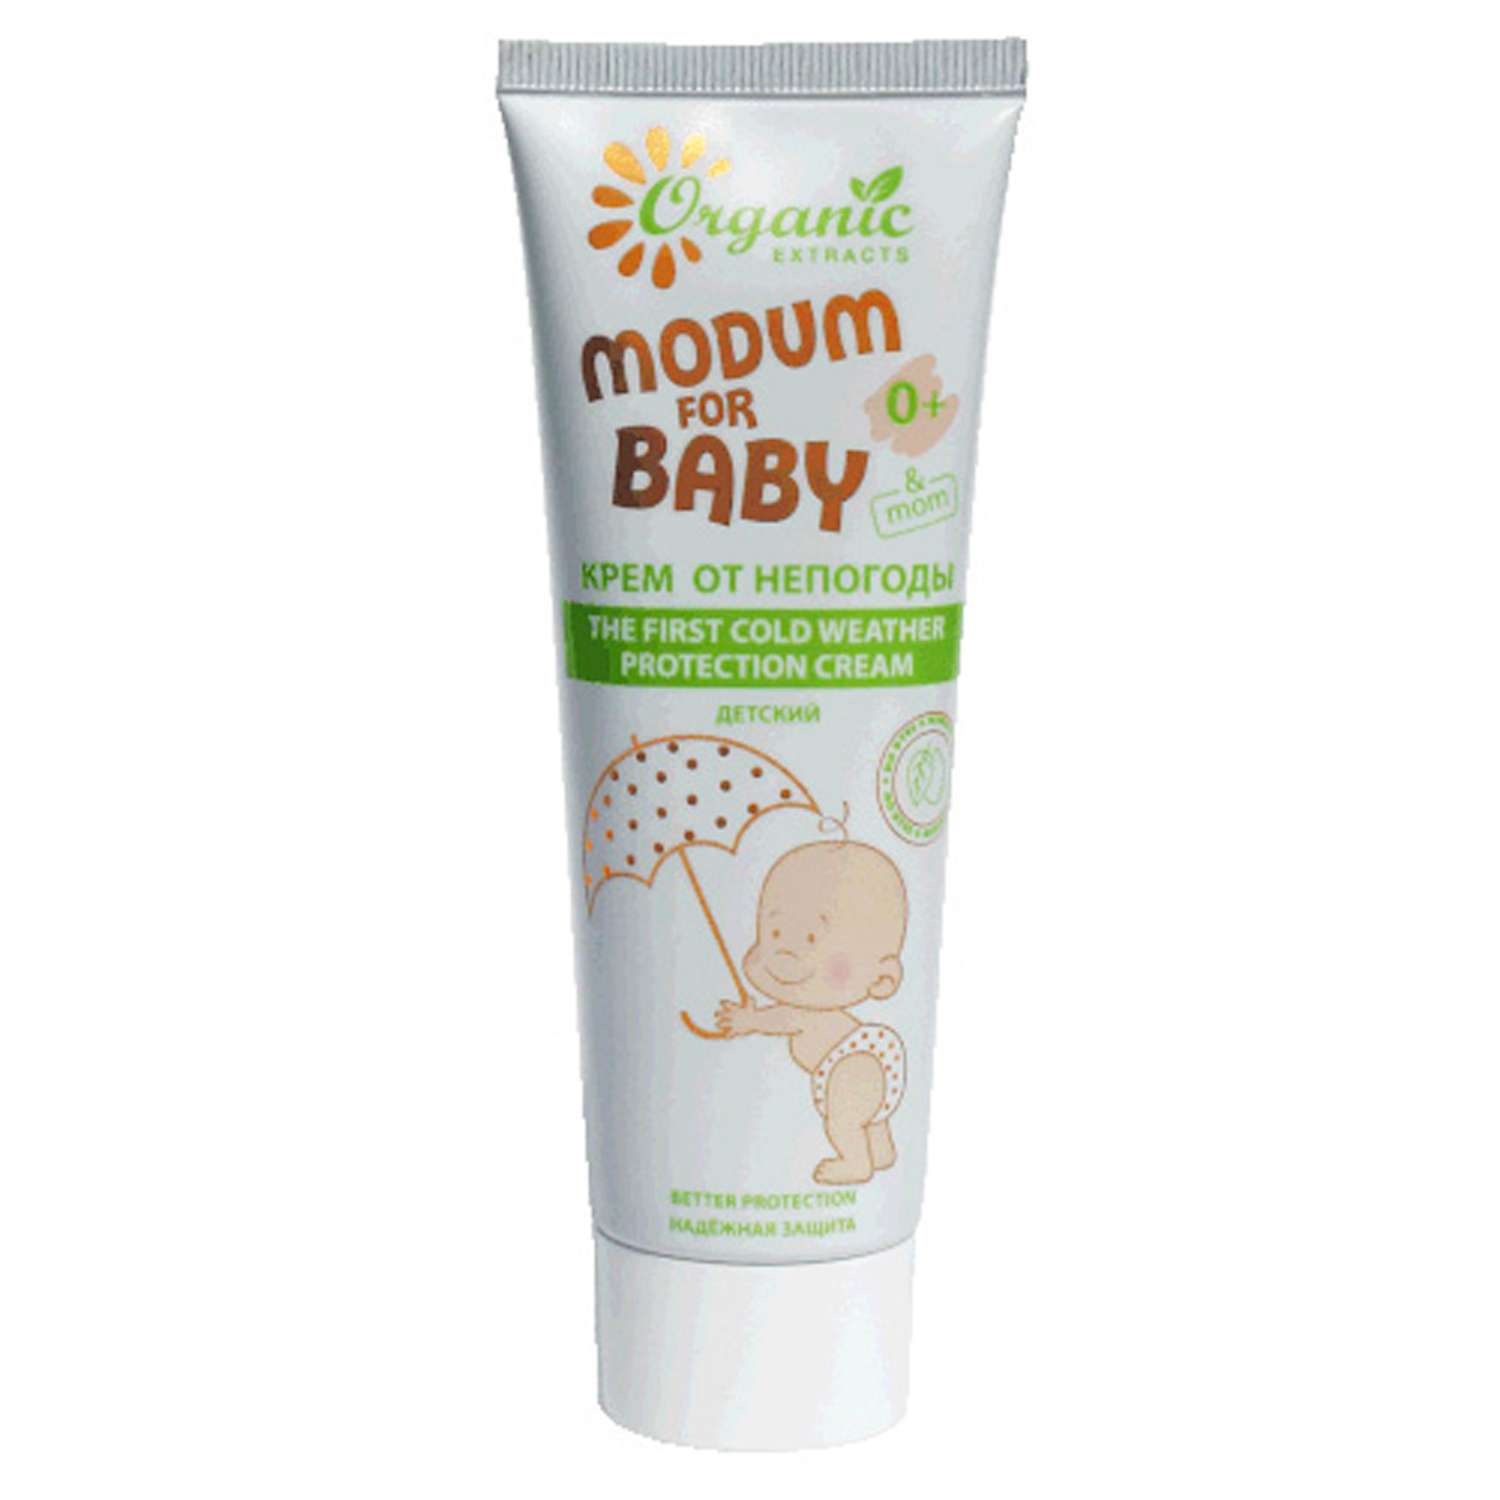 Крем MODUM for baby от непогоды детский 0+ 75 мл - фото 1